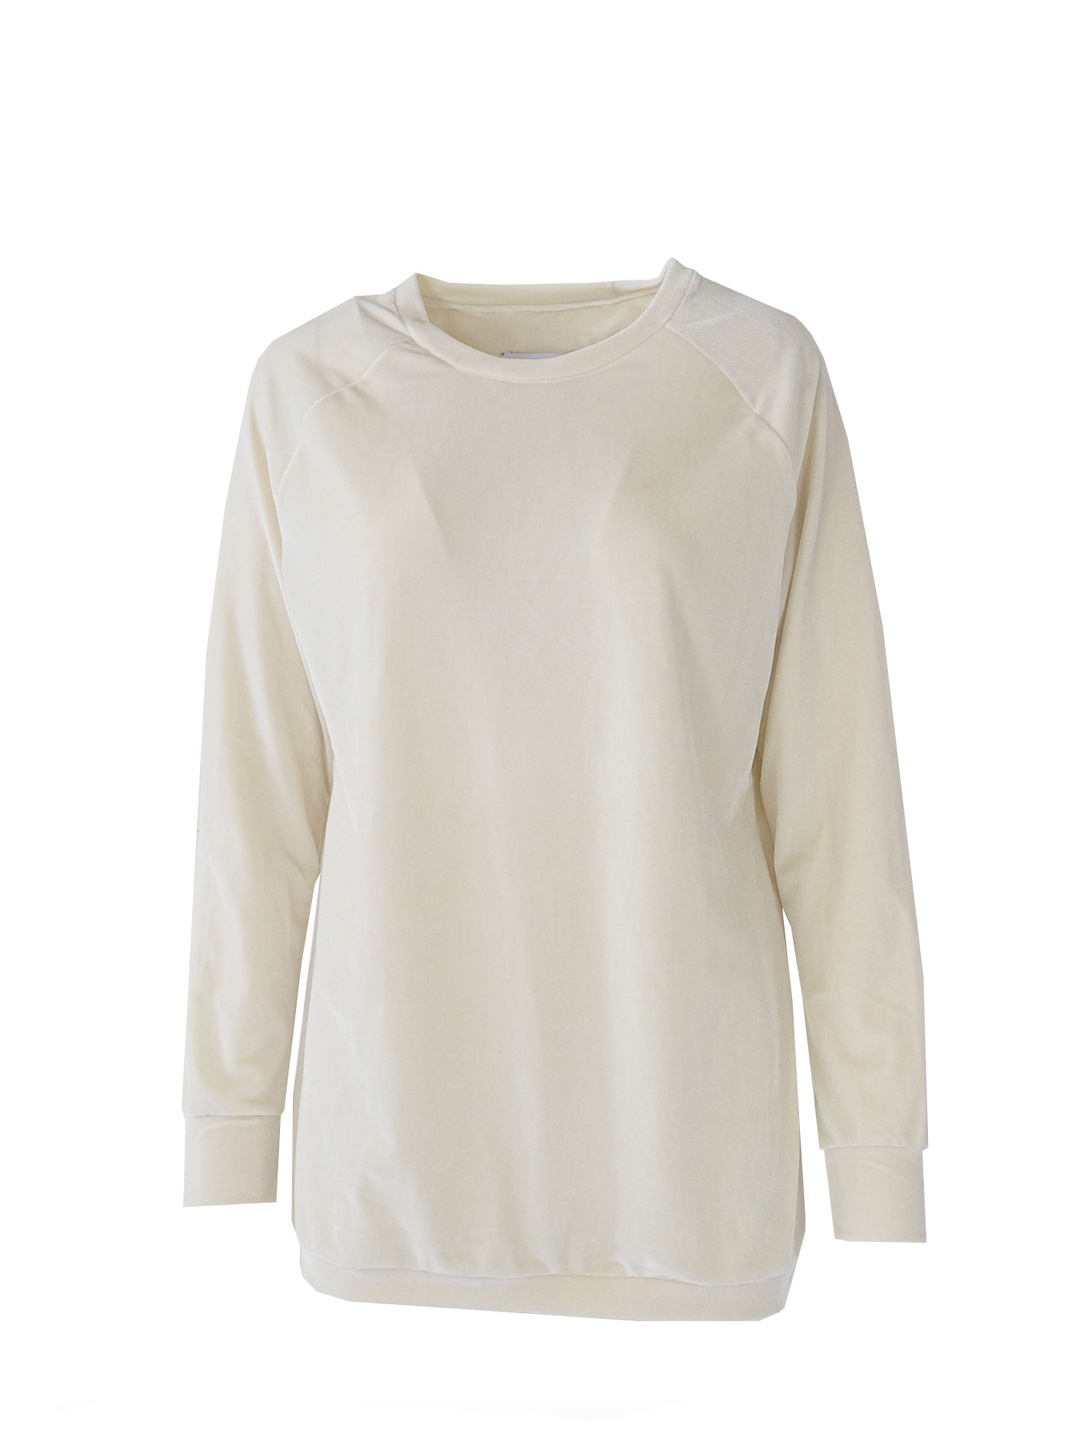 FLORA - chenille sweatshirt in cream